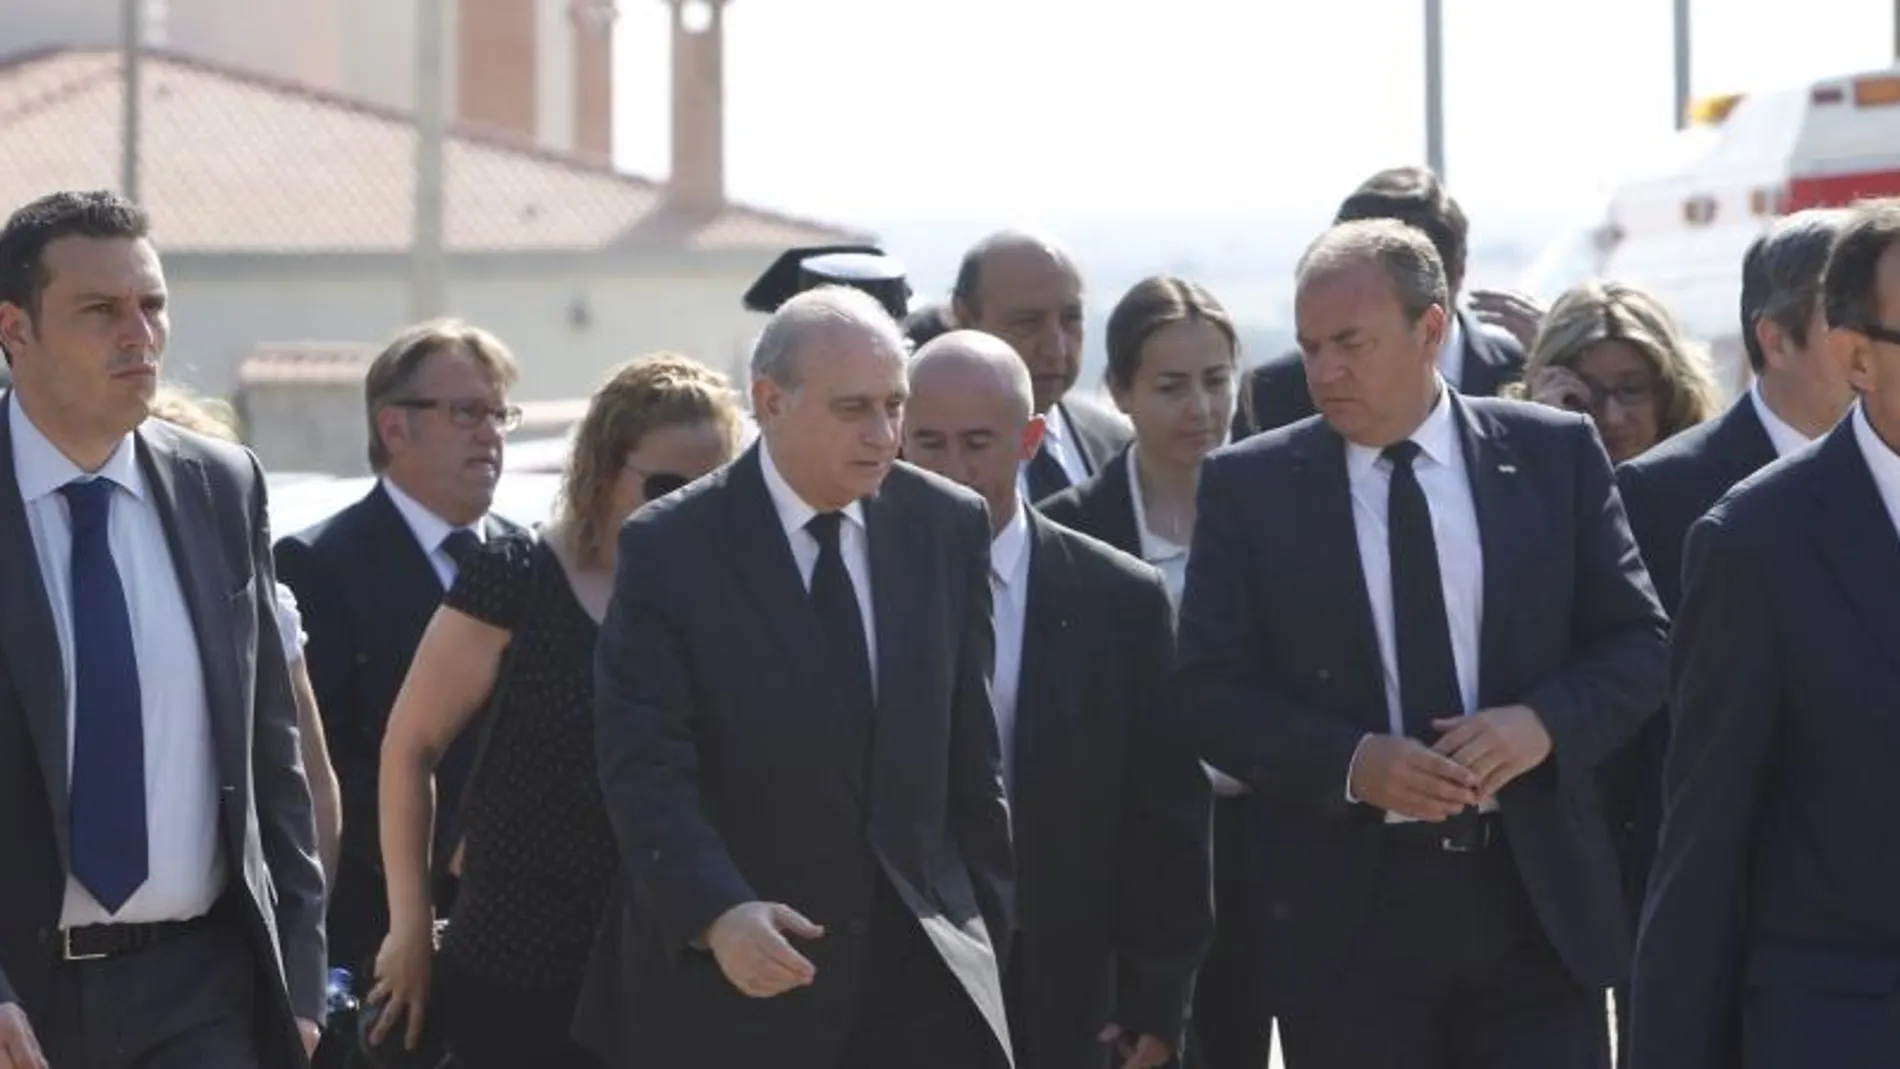 El ministro de Interior acude al funeral por la muerte de cinco jóvenes en Monterrubio de la Serena.